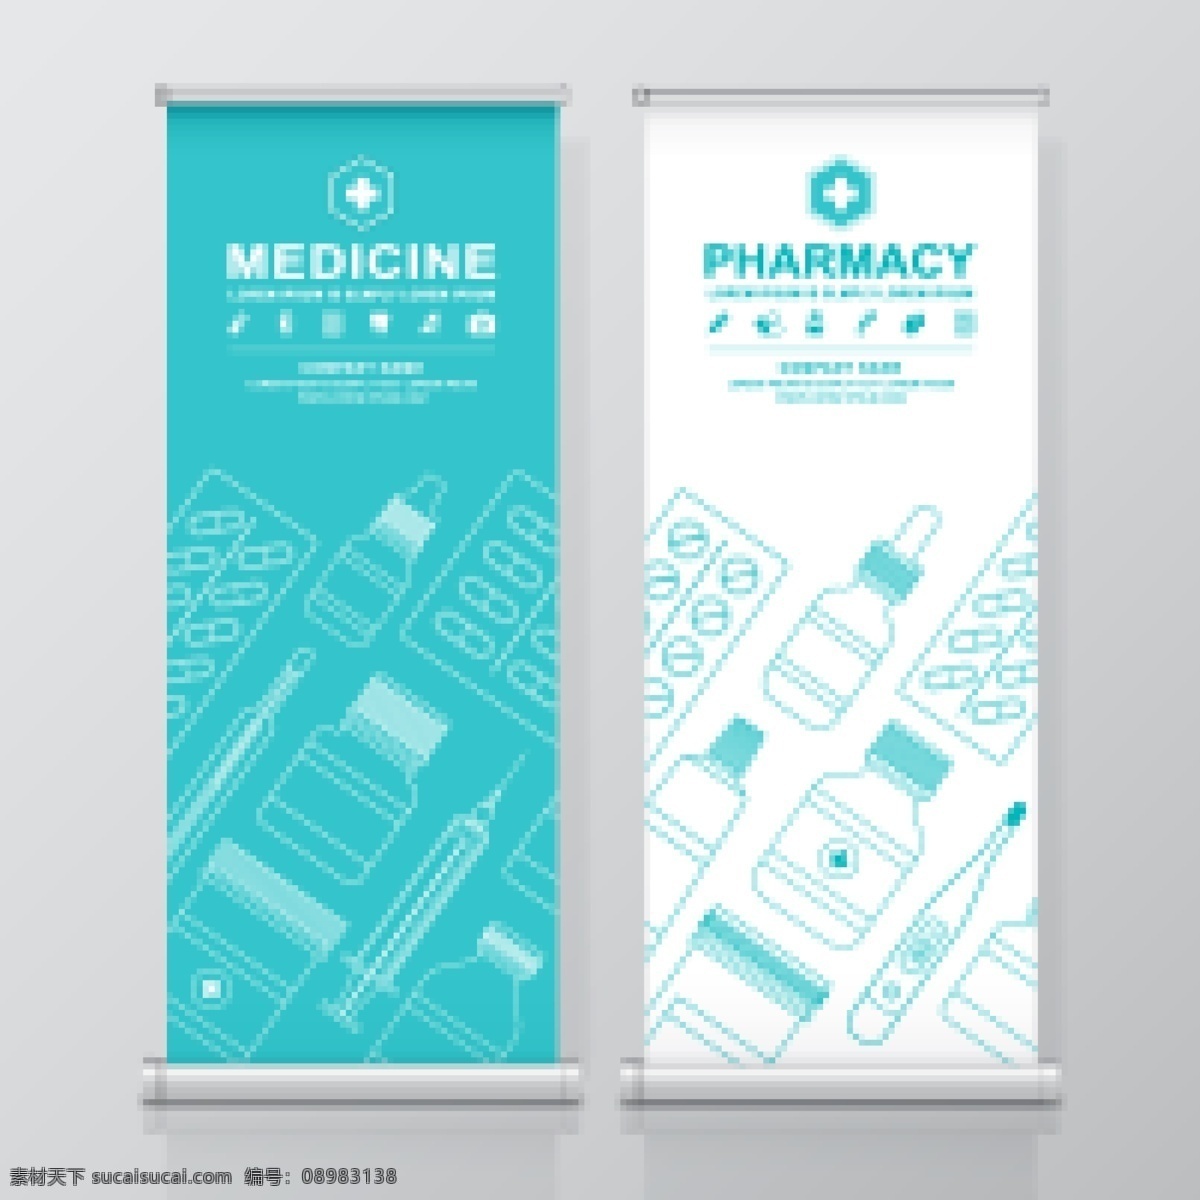 医疗健康展板 易拉宝 宣传 展架 医疗 卫生 健康 背景 展板模板